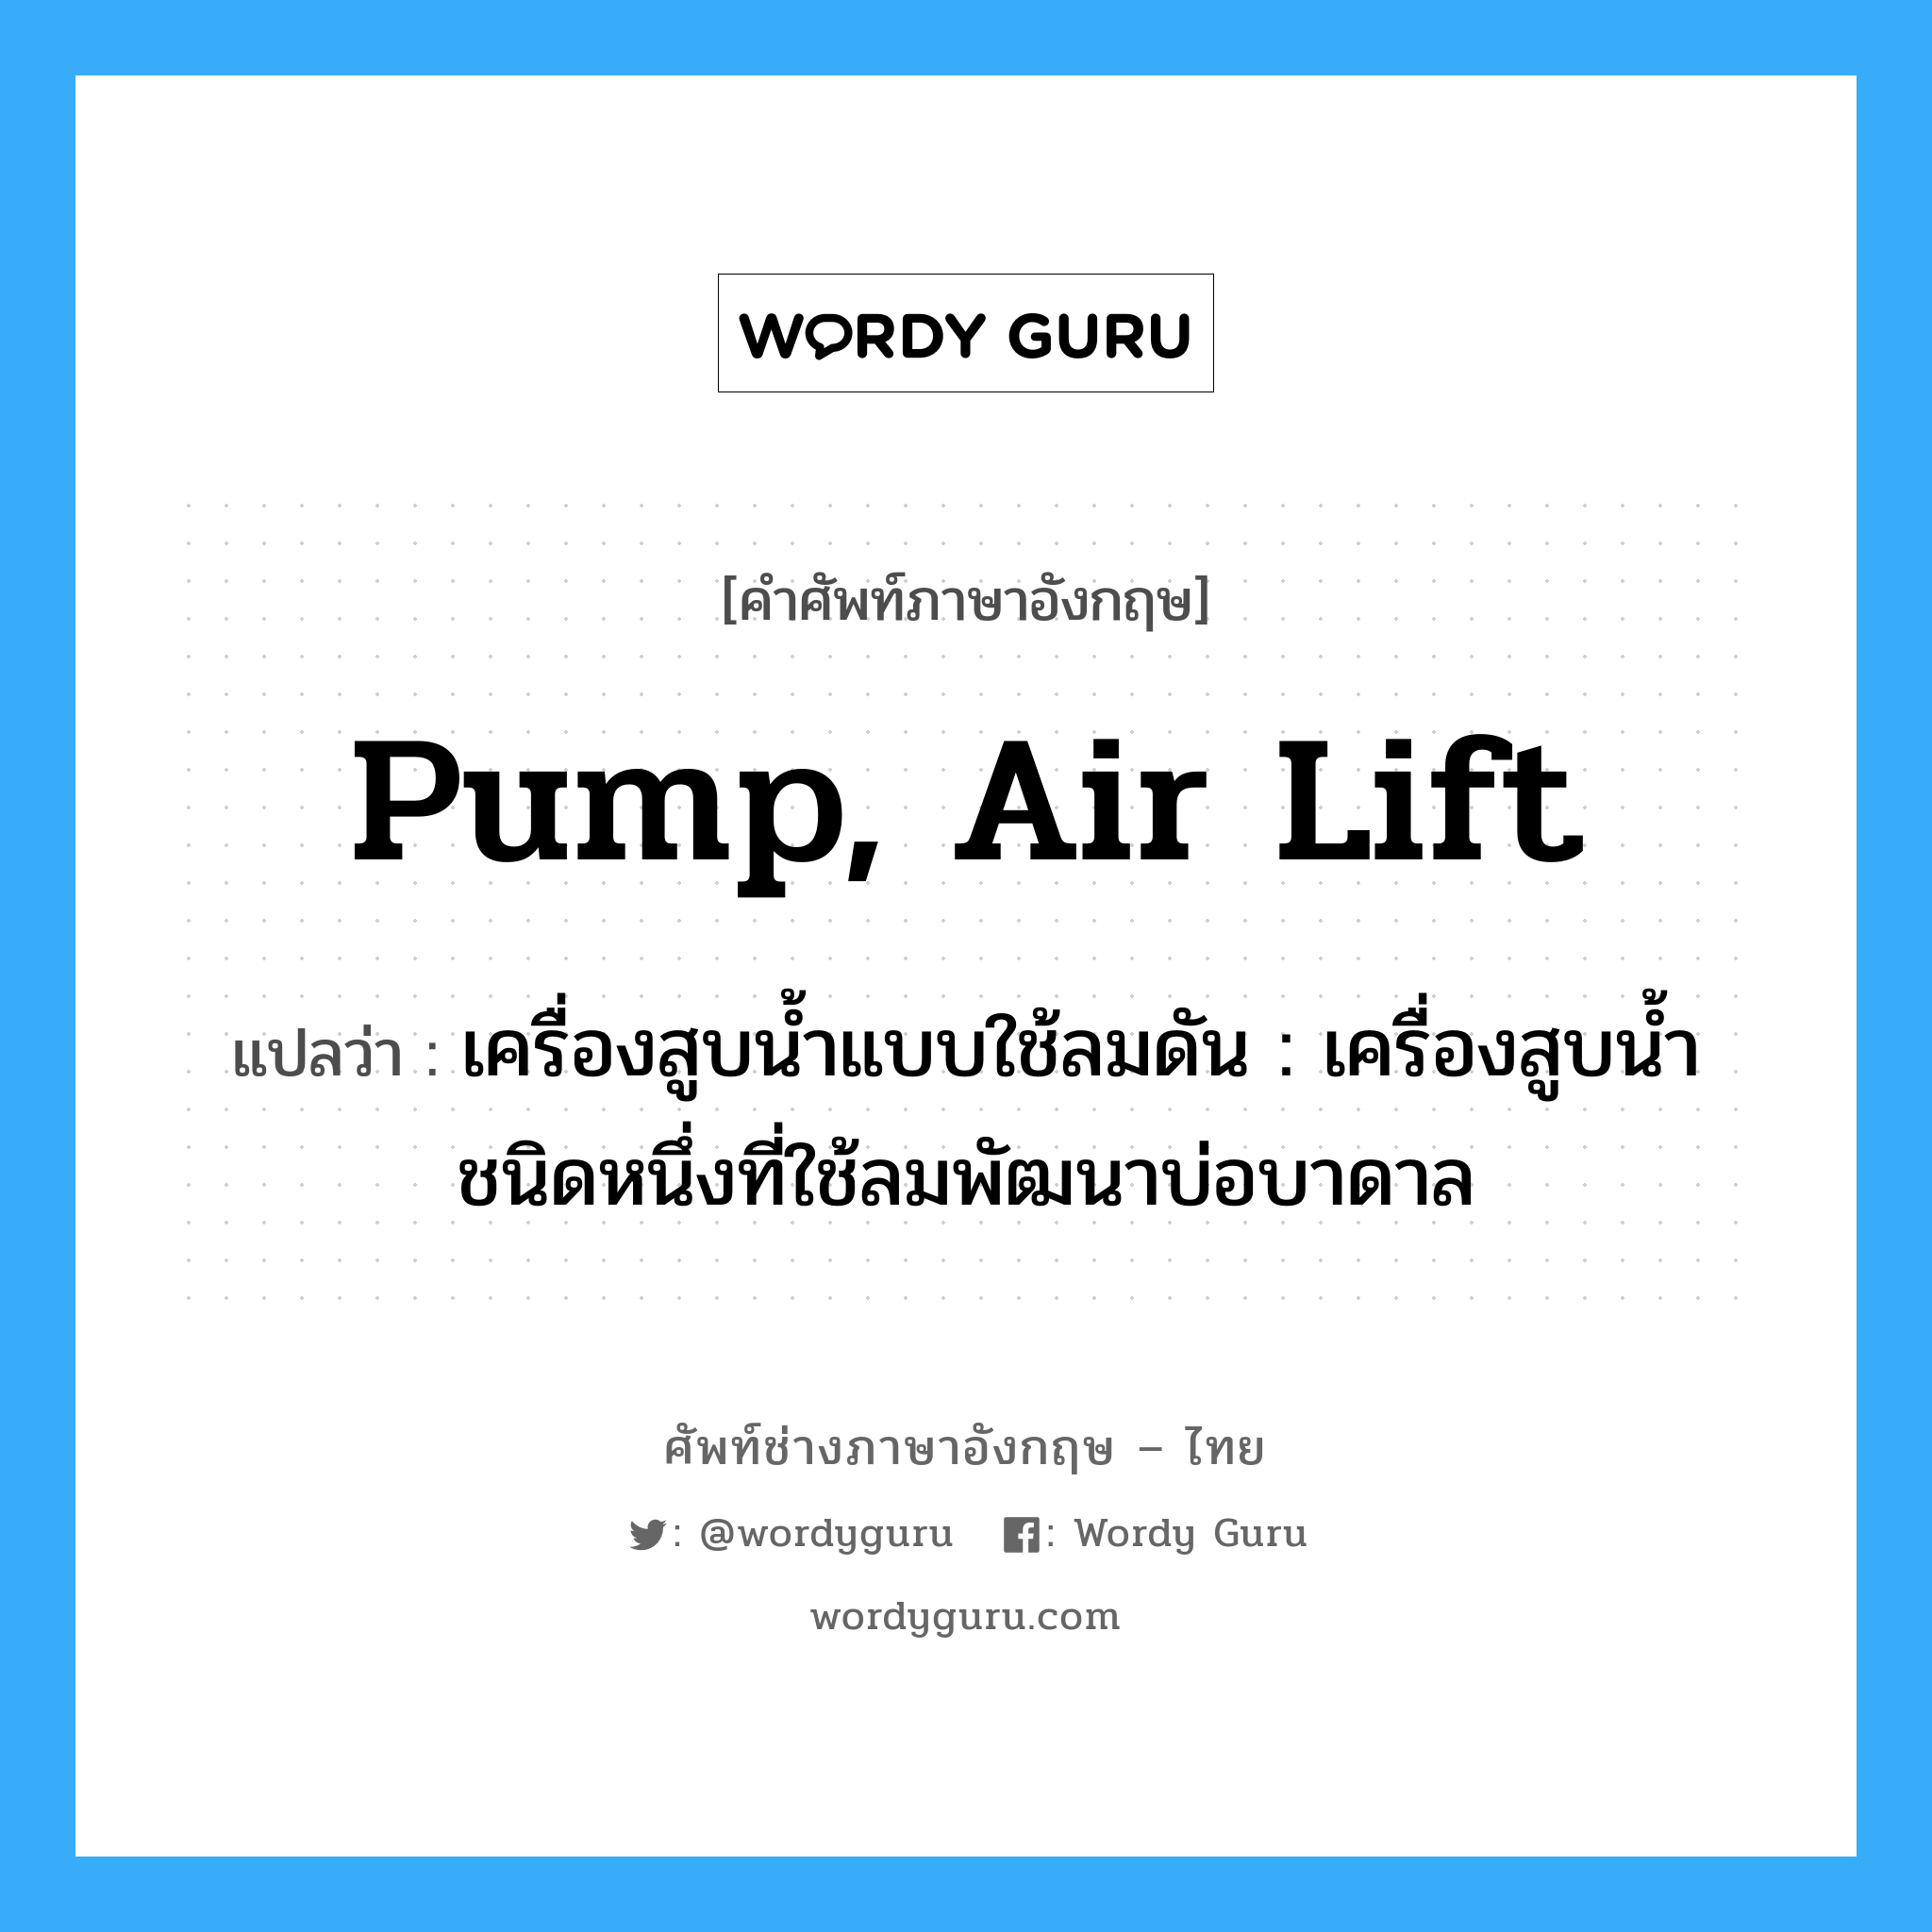 pump, air lift แปลว่า?, คำศัพท์ช่างภาษาอังกฤษ - ไทย pump, air lift คำศัพท์ภาษาอังกฤษ pump, air lift แปลว่า เครื่องสูบน้ำแบบใช้ลมดัน : เครื่องสูบน้ำชนิดหนึ่งที่ใช้ลมพัฒนาบ่อบาดาล